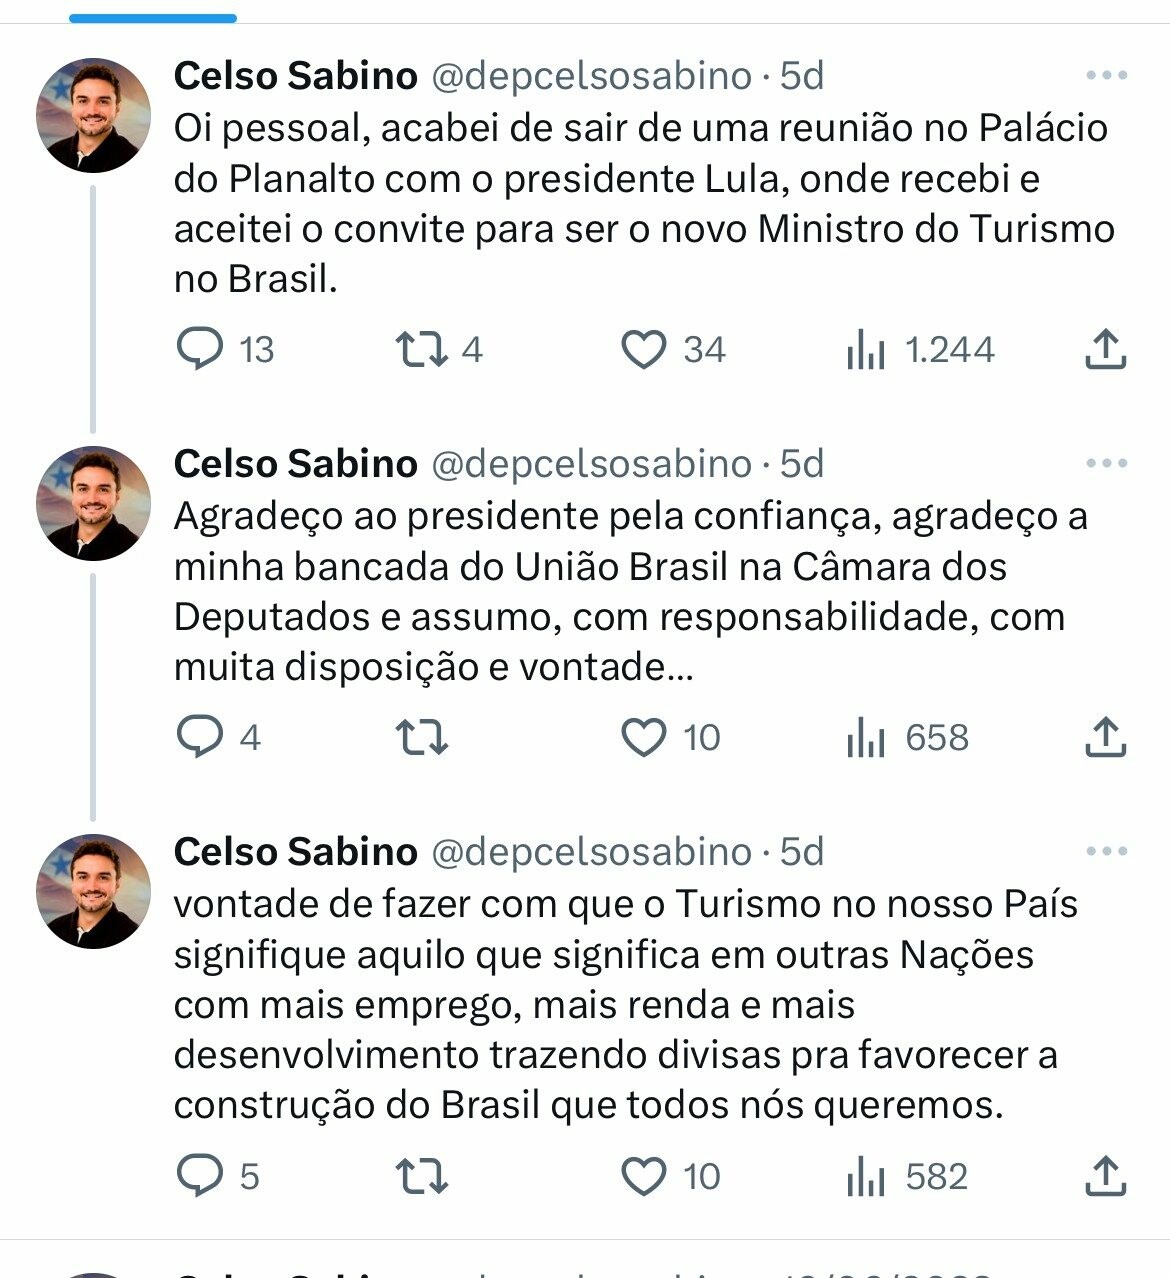 Sabino comentou que pretende desenvolver o setor trazendo divisas para favorecer do Brasil 